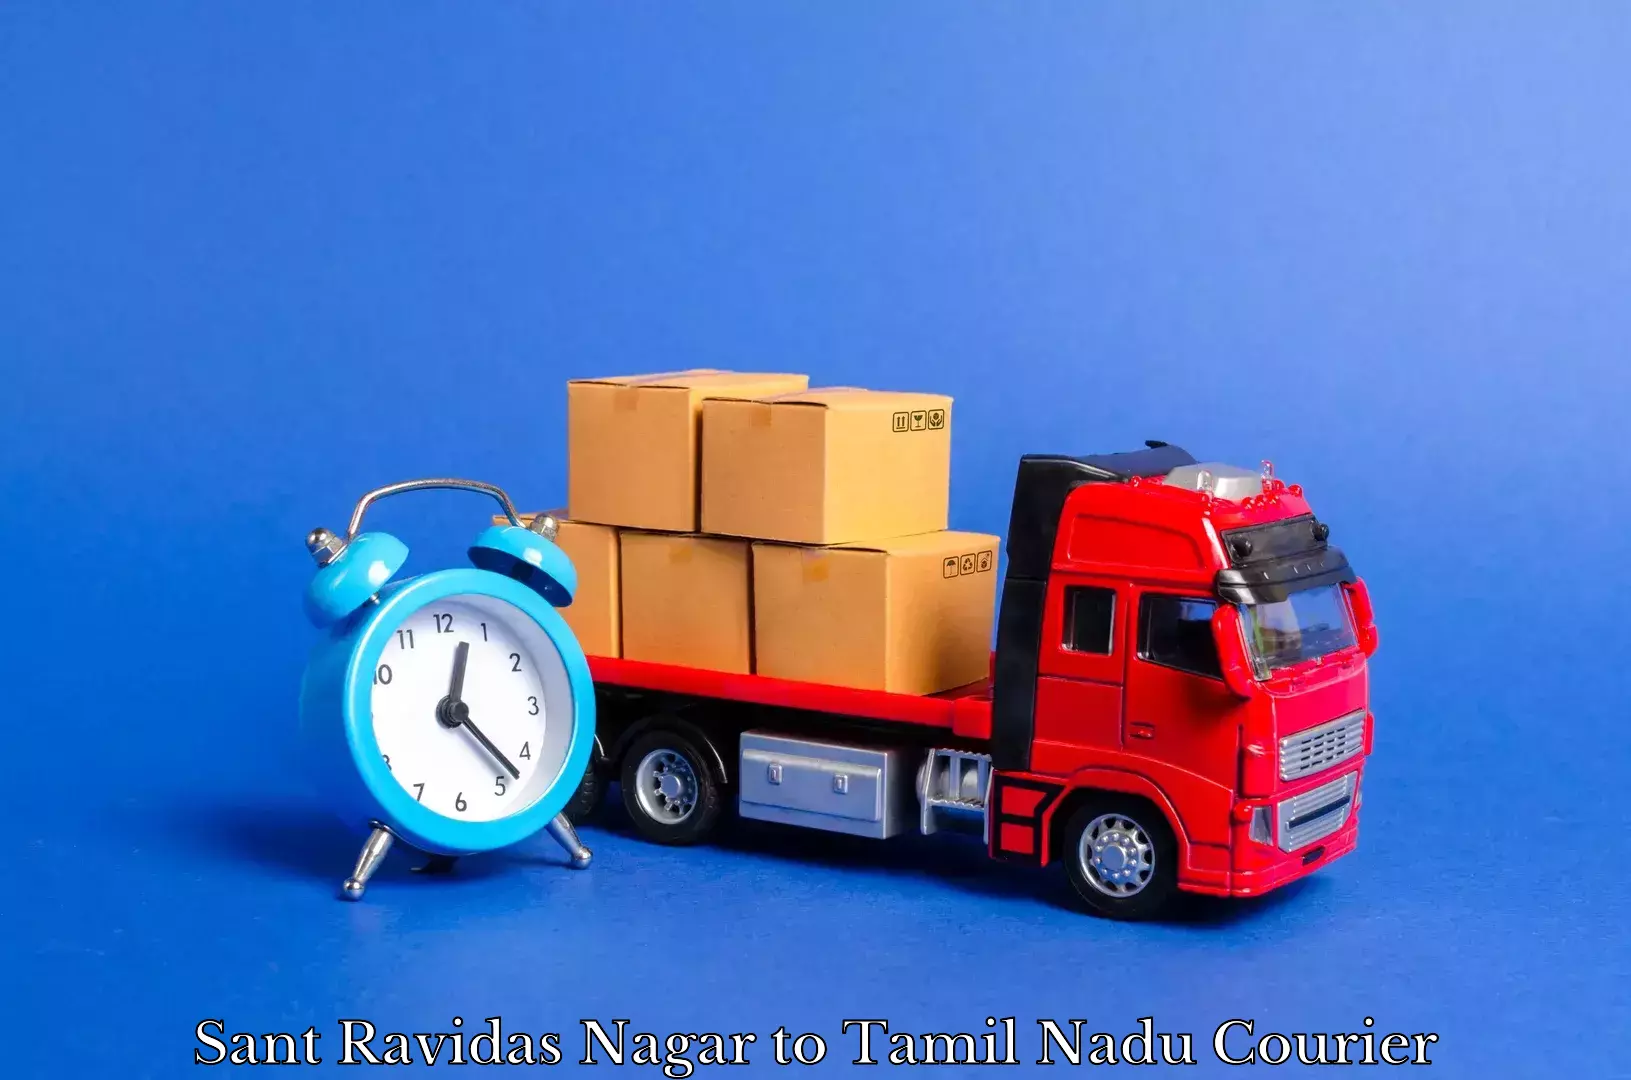 Home moving experts Sant Ravidas Nagar to Karambakkudi